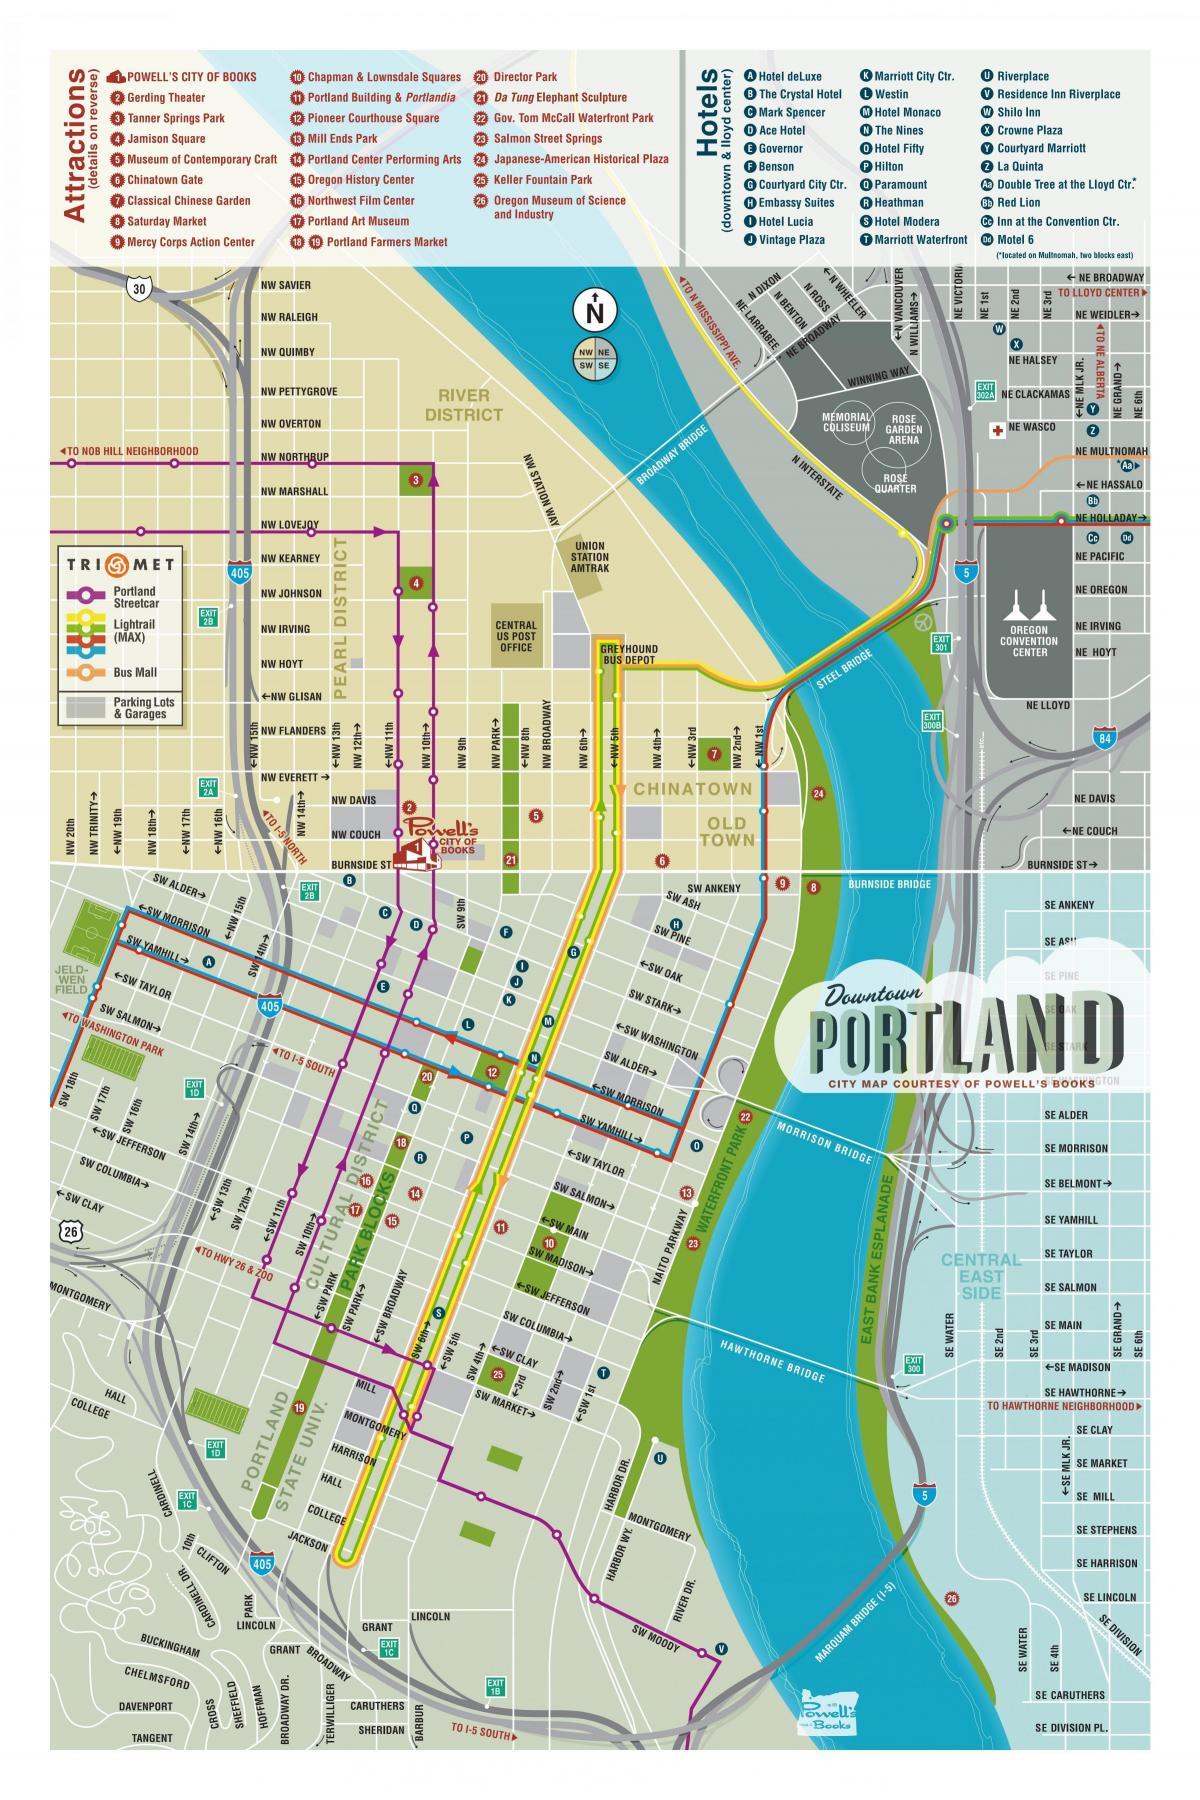 Portland vaatamisväärsusi kaardil